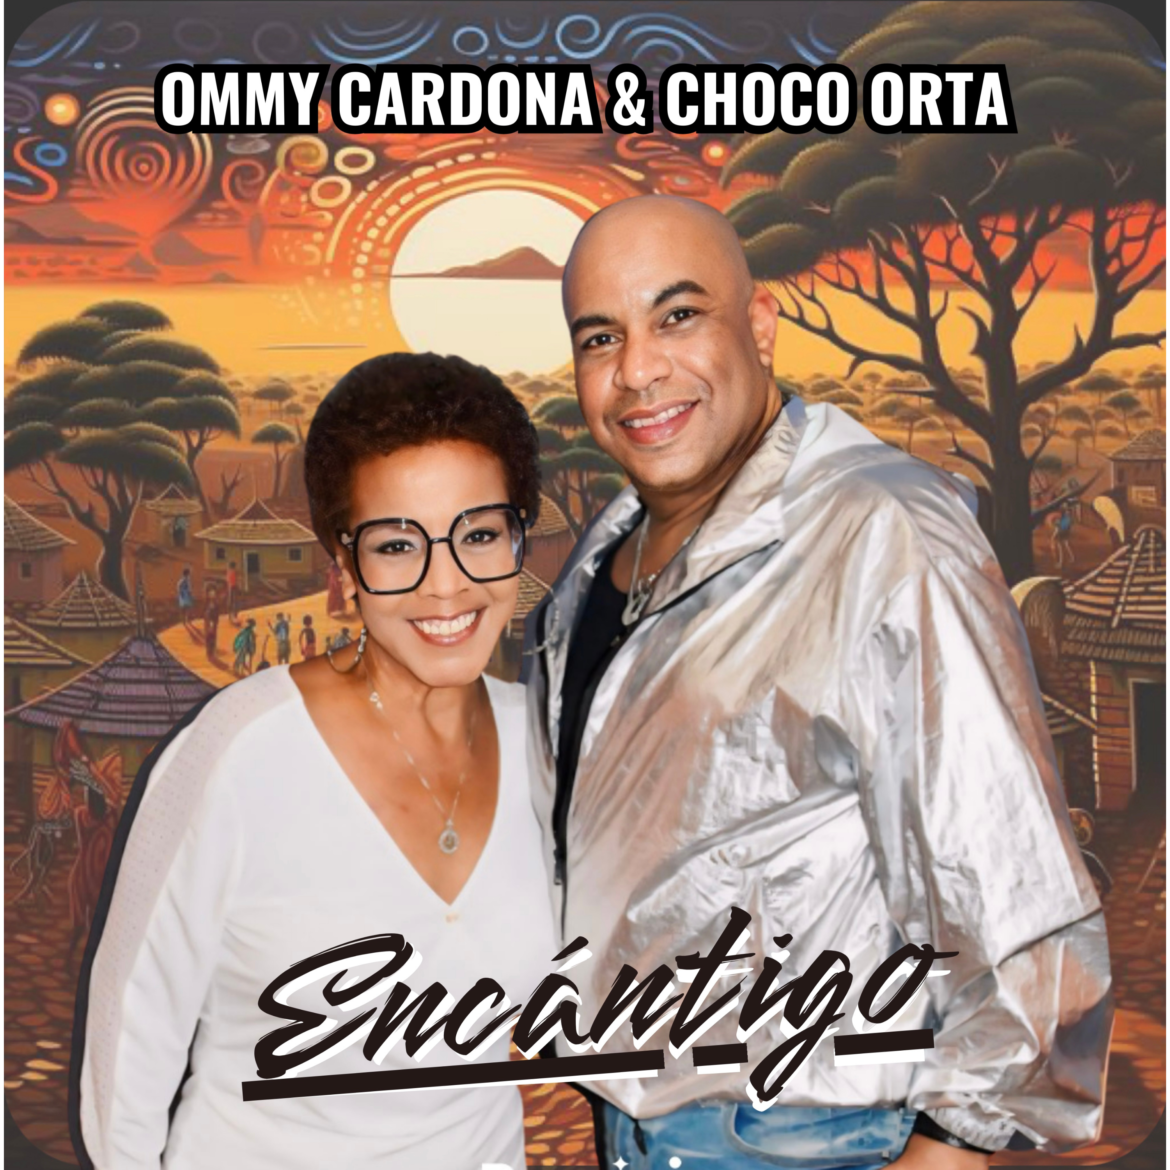 Estreno del sencillo “Encántigo” interpretado por Ommy Cardona y Choco Orta